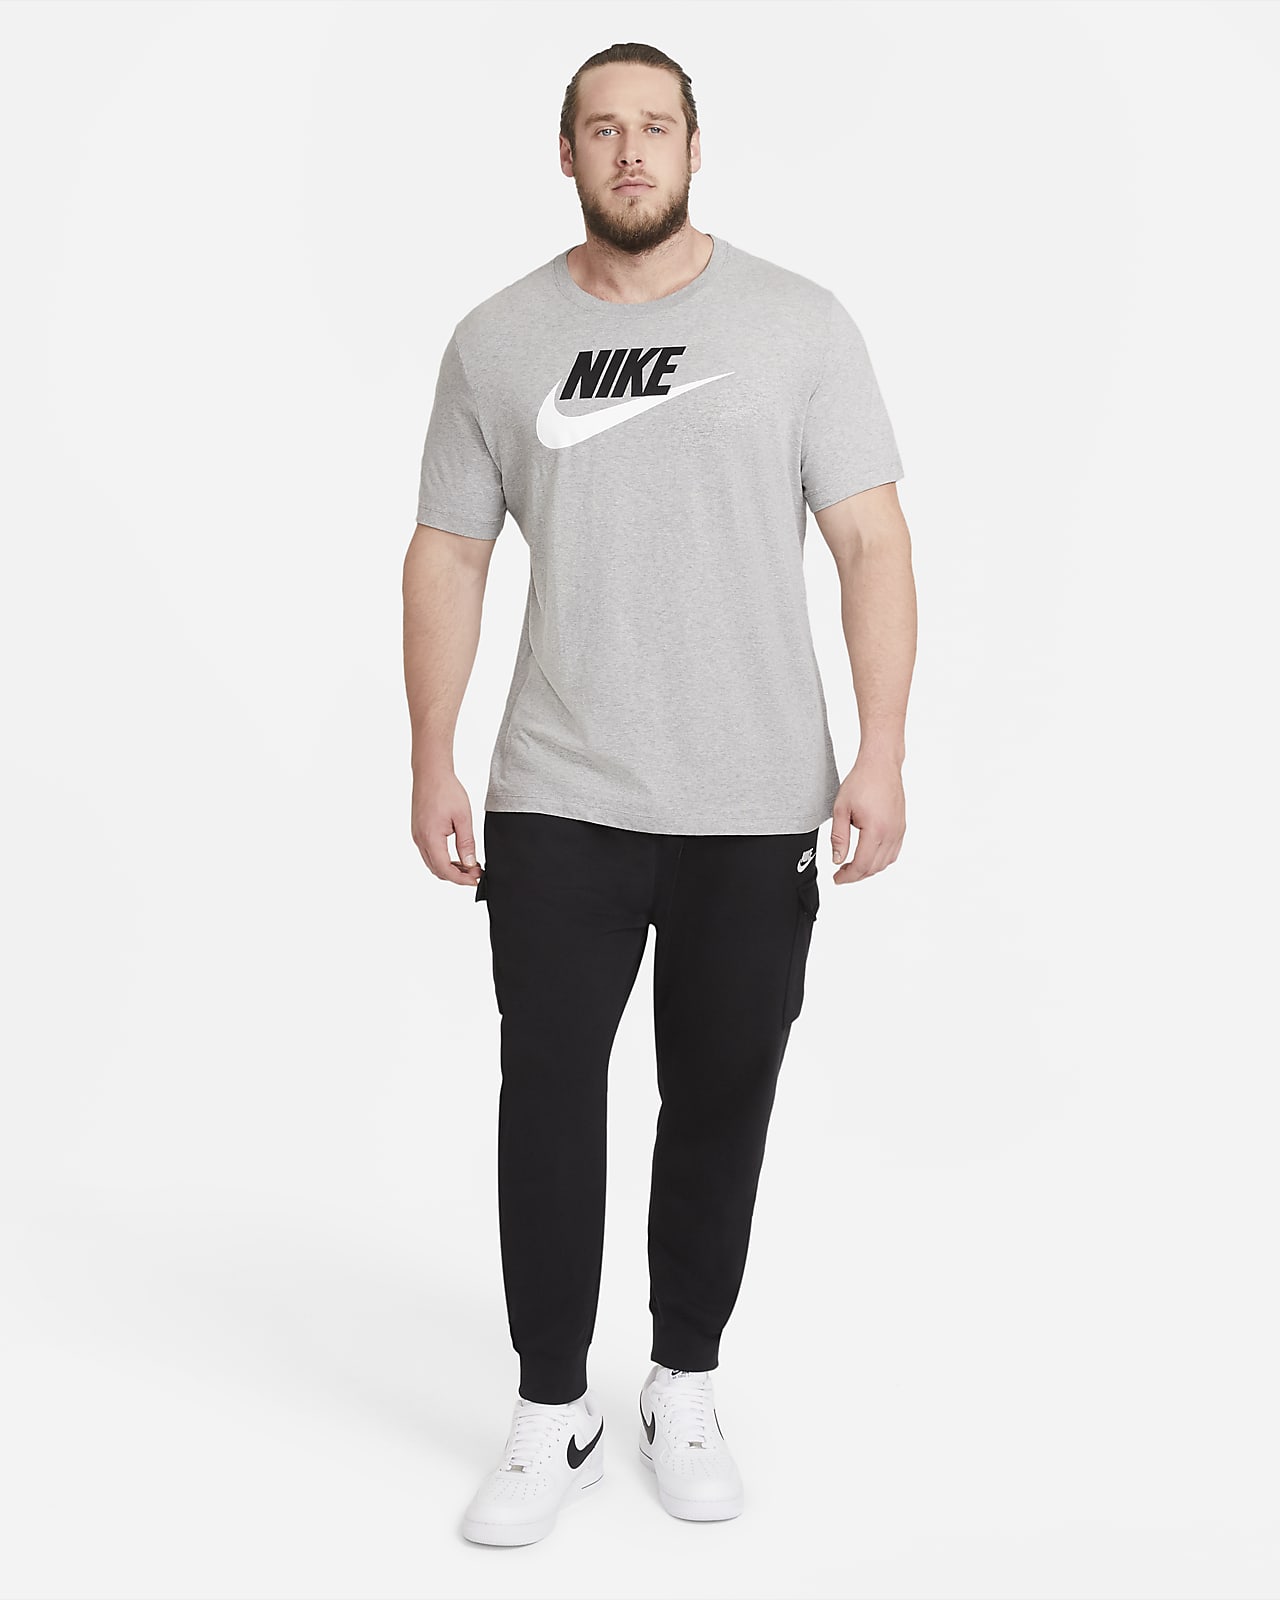 construcción naval temperamento inestable Nike Sportswear Camiseta - Hombre. Nike ES